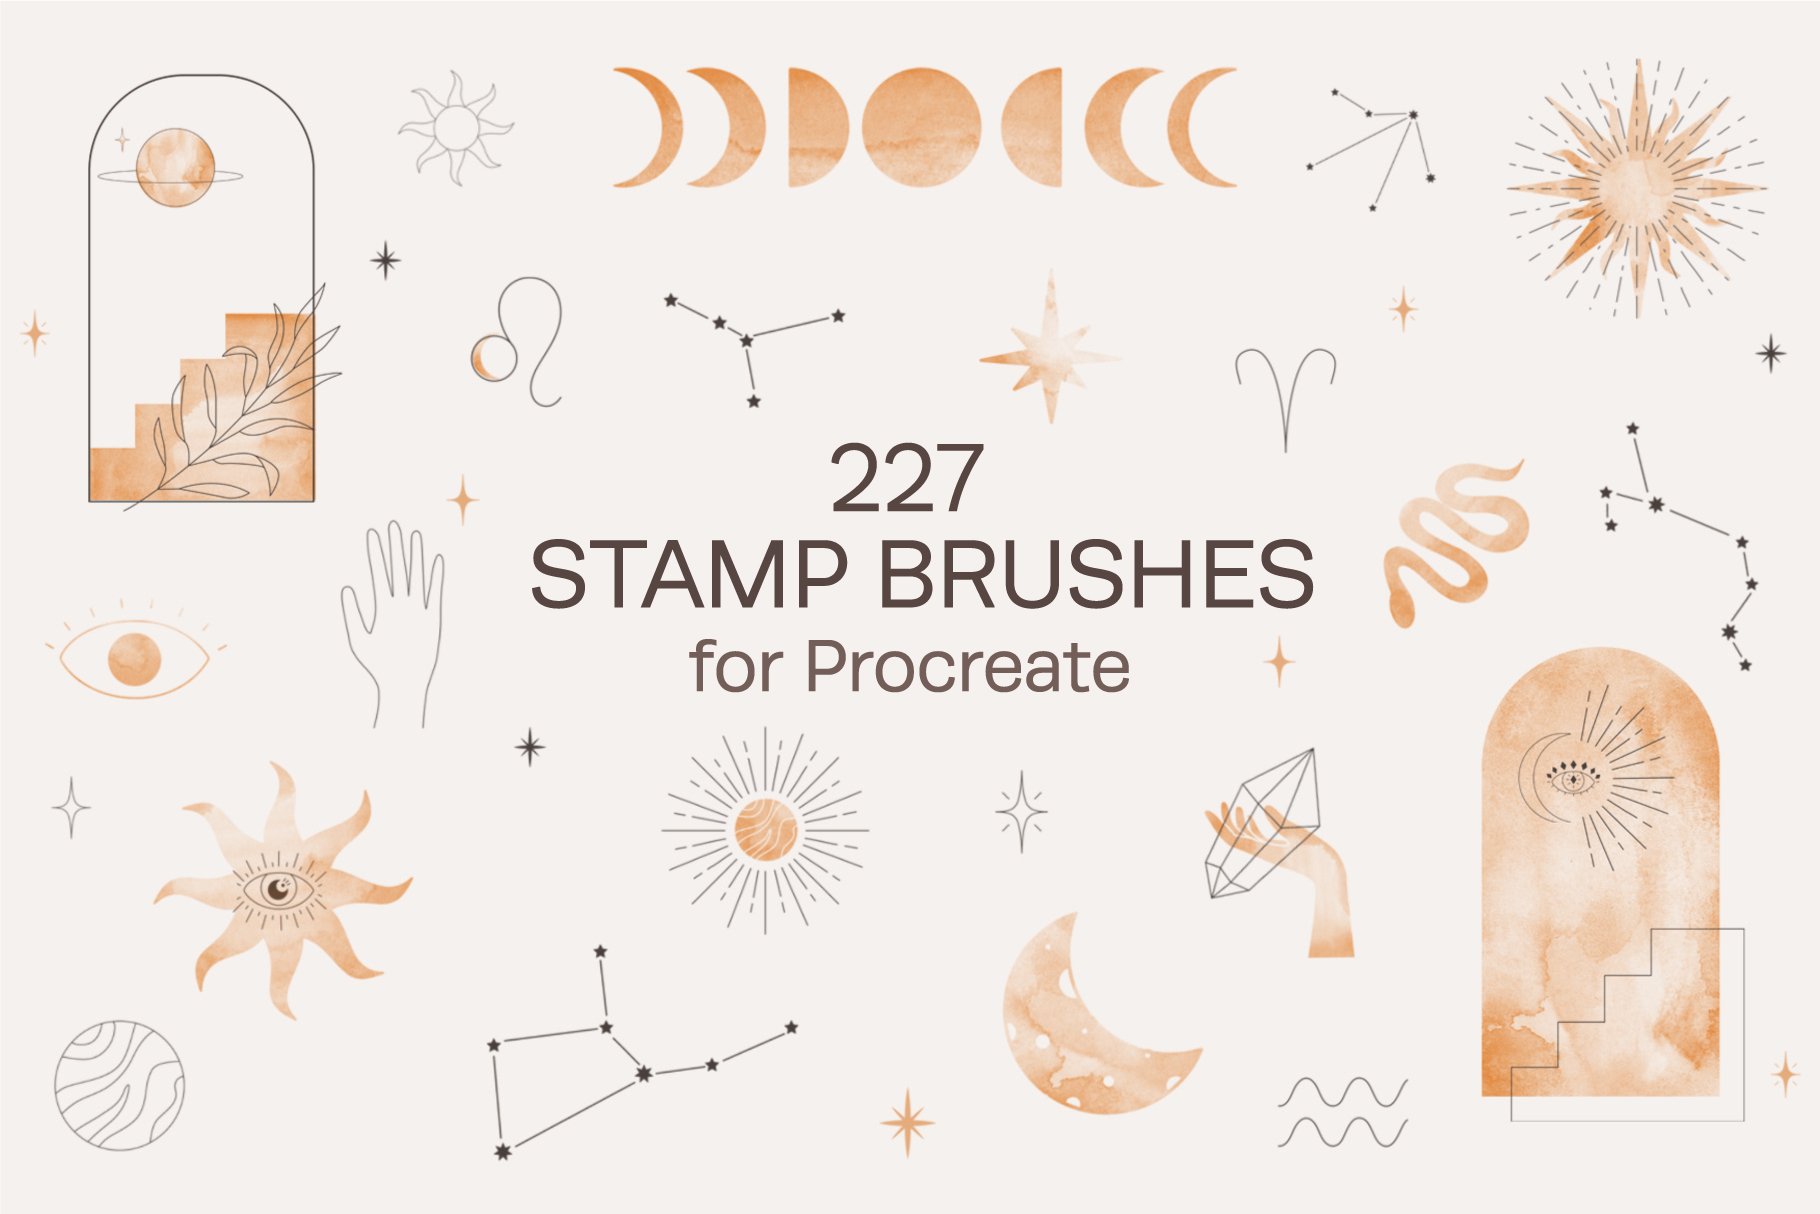 Free 2 Celestial Washi Tape Brushes - Free Brushes for Procreate